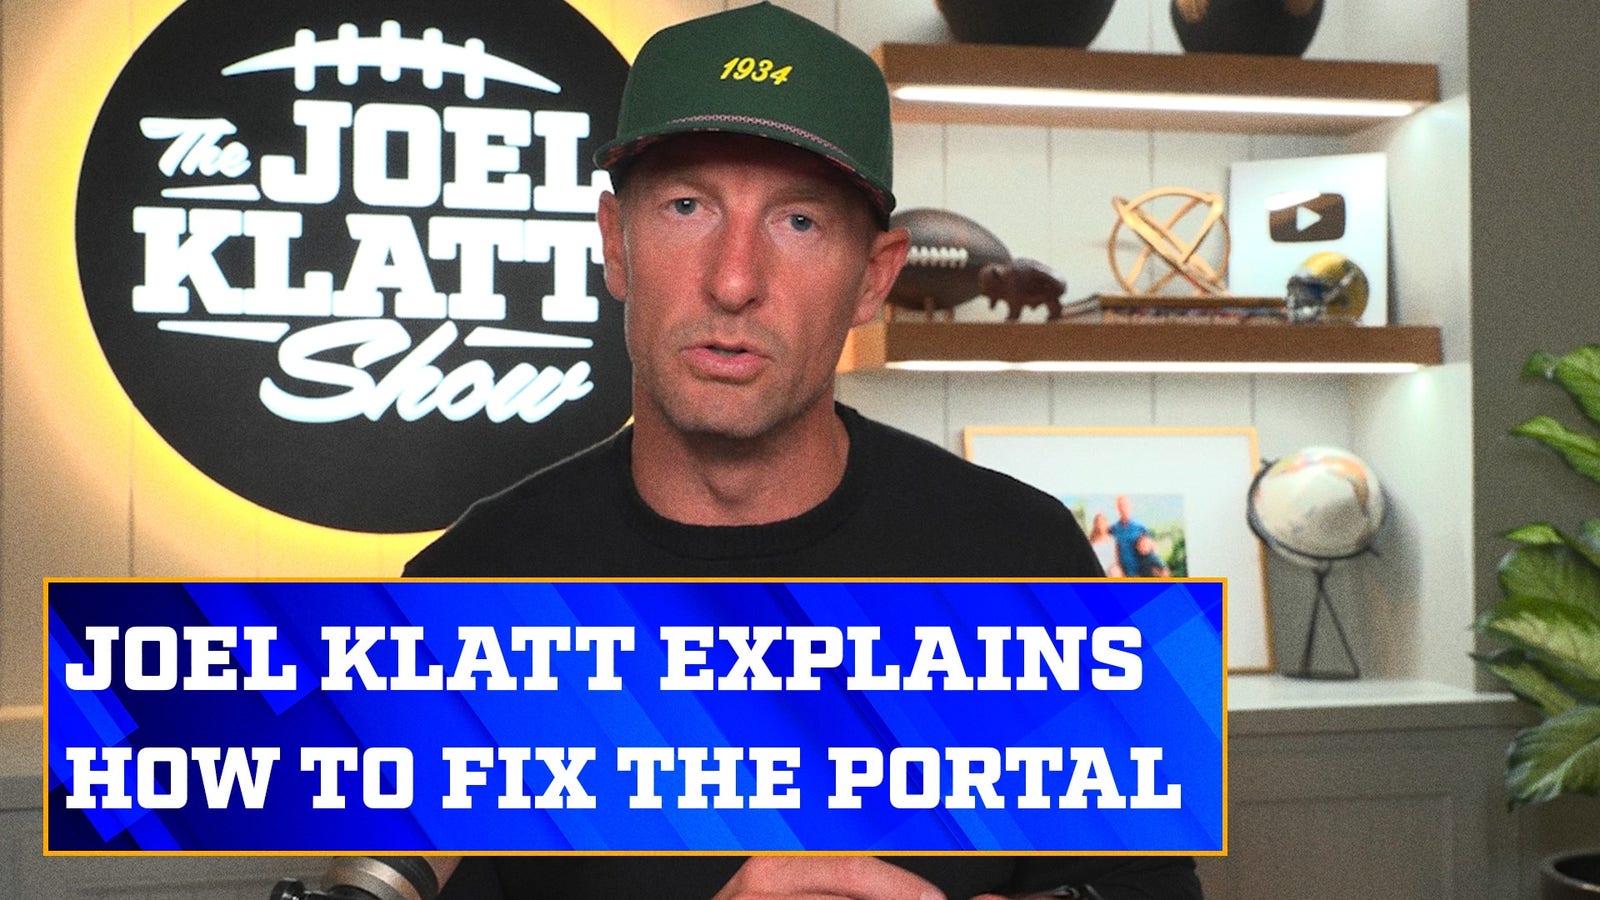 Joel Klatt breaks down the spring transfer portal window & how to fix it 